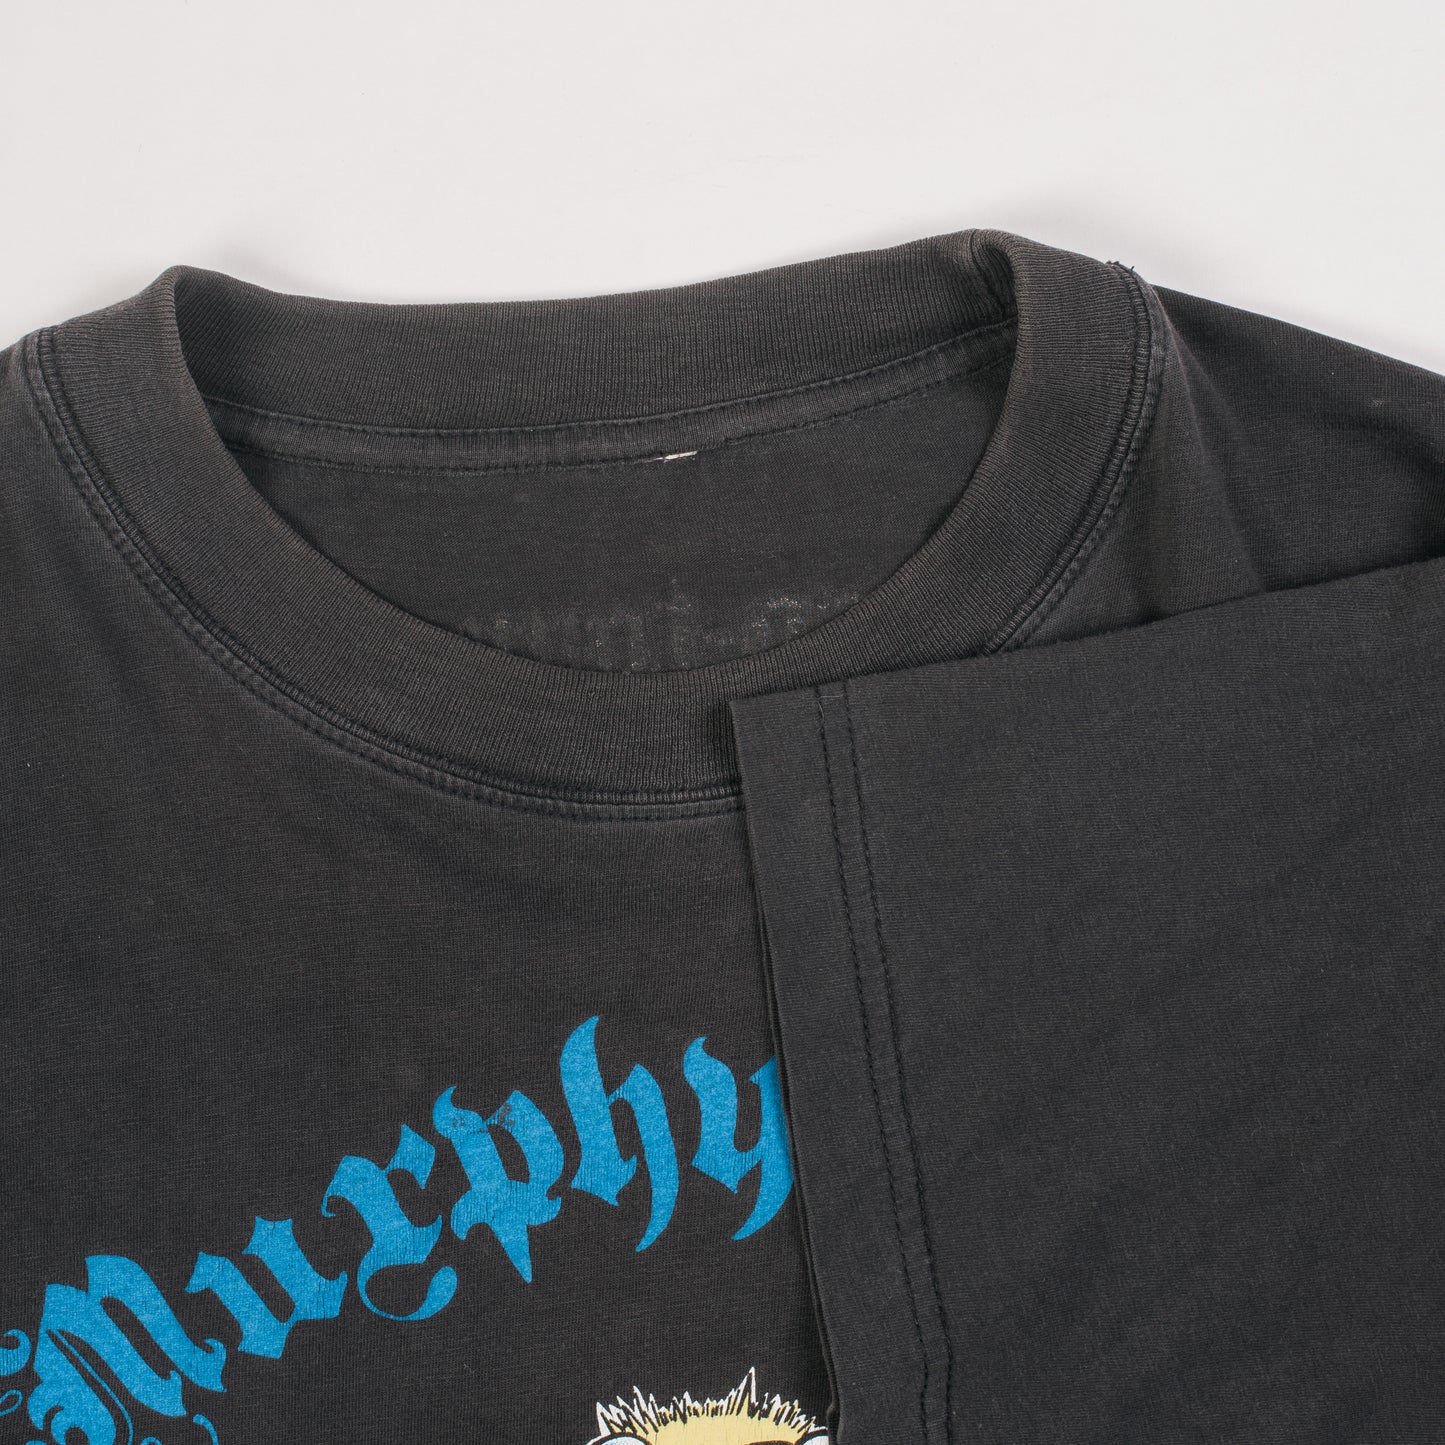 Vintage 1999 Murphy’s Law Euro Tour T-Shirt